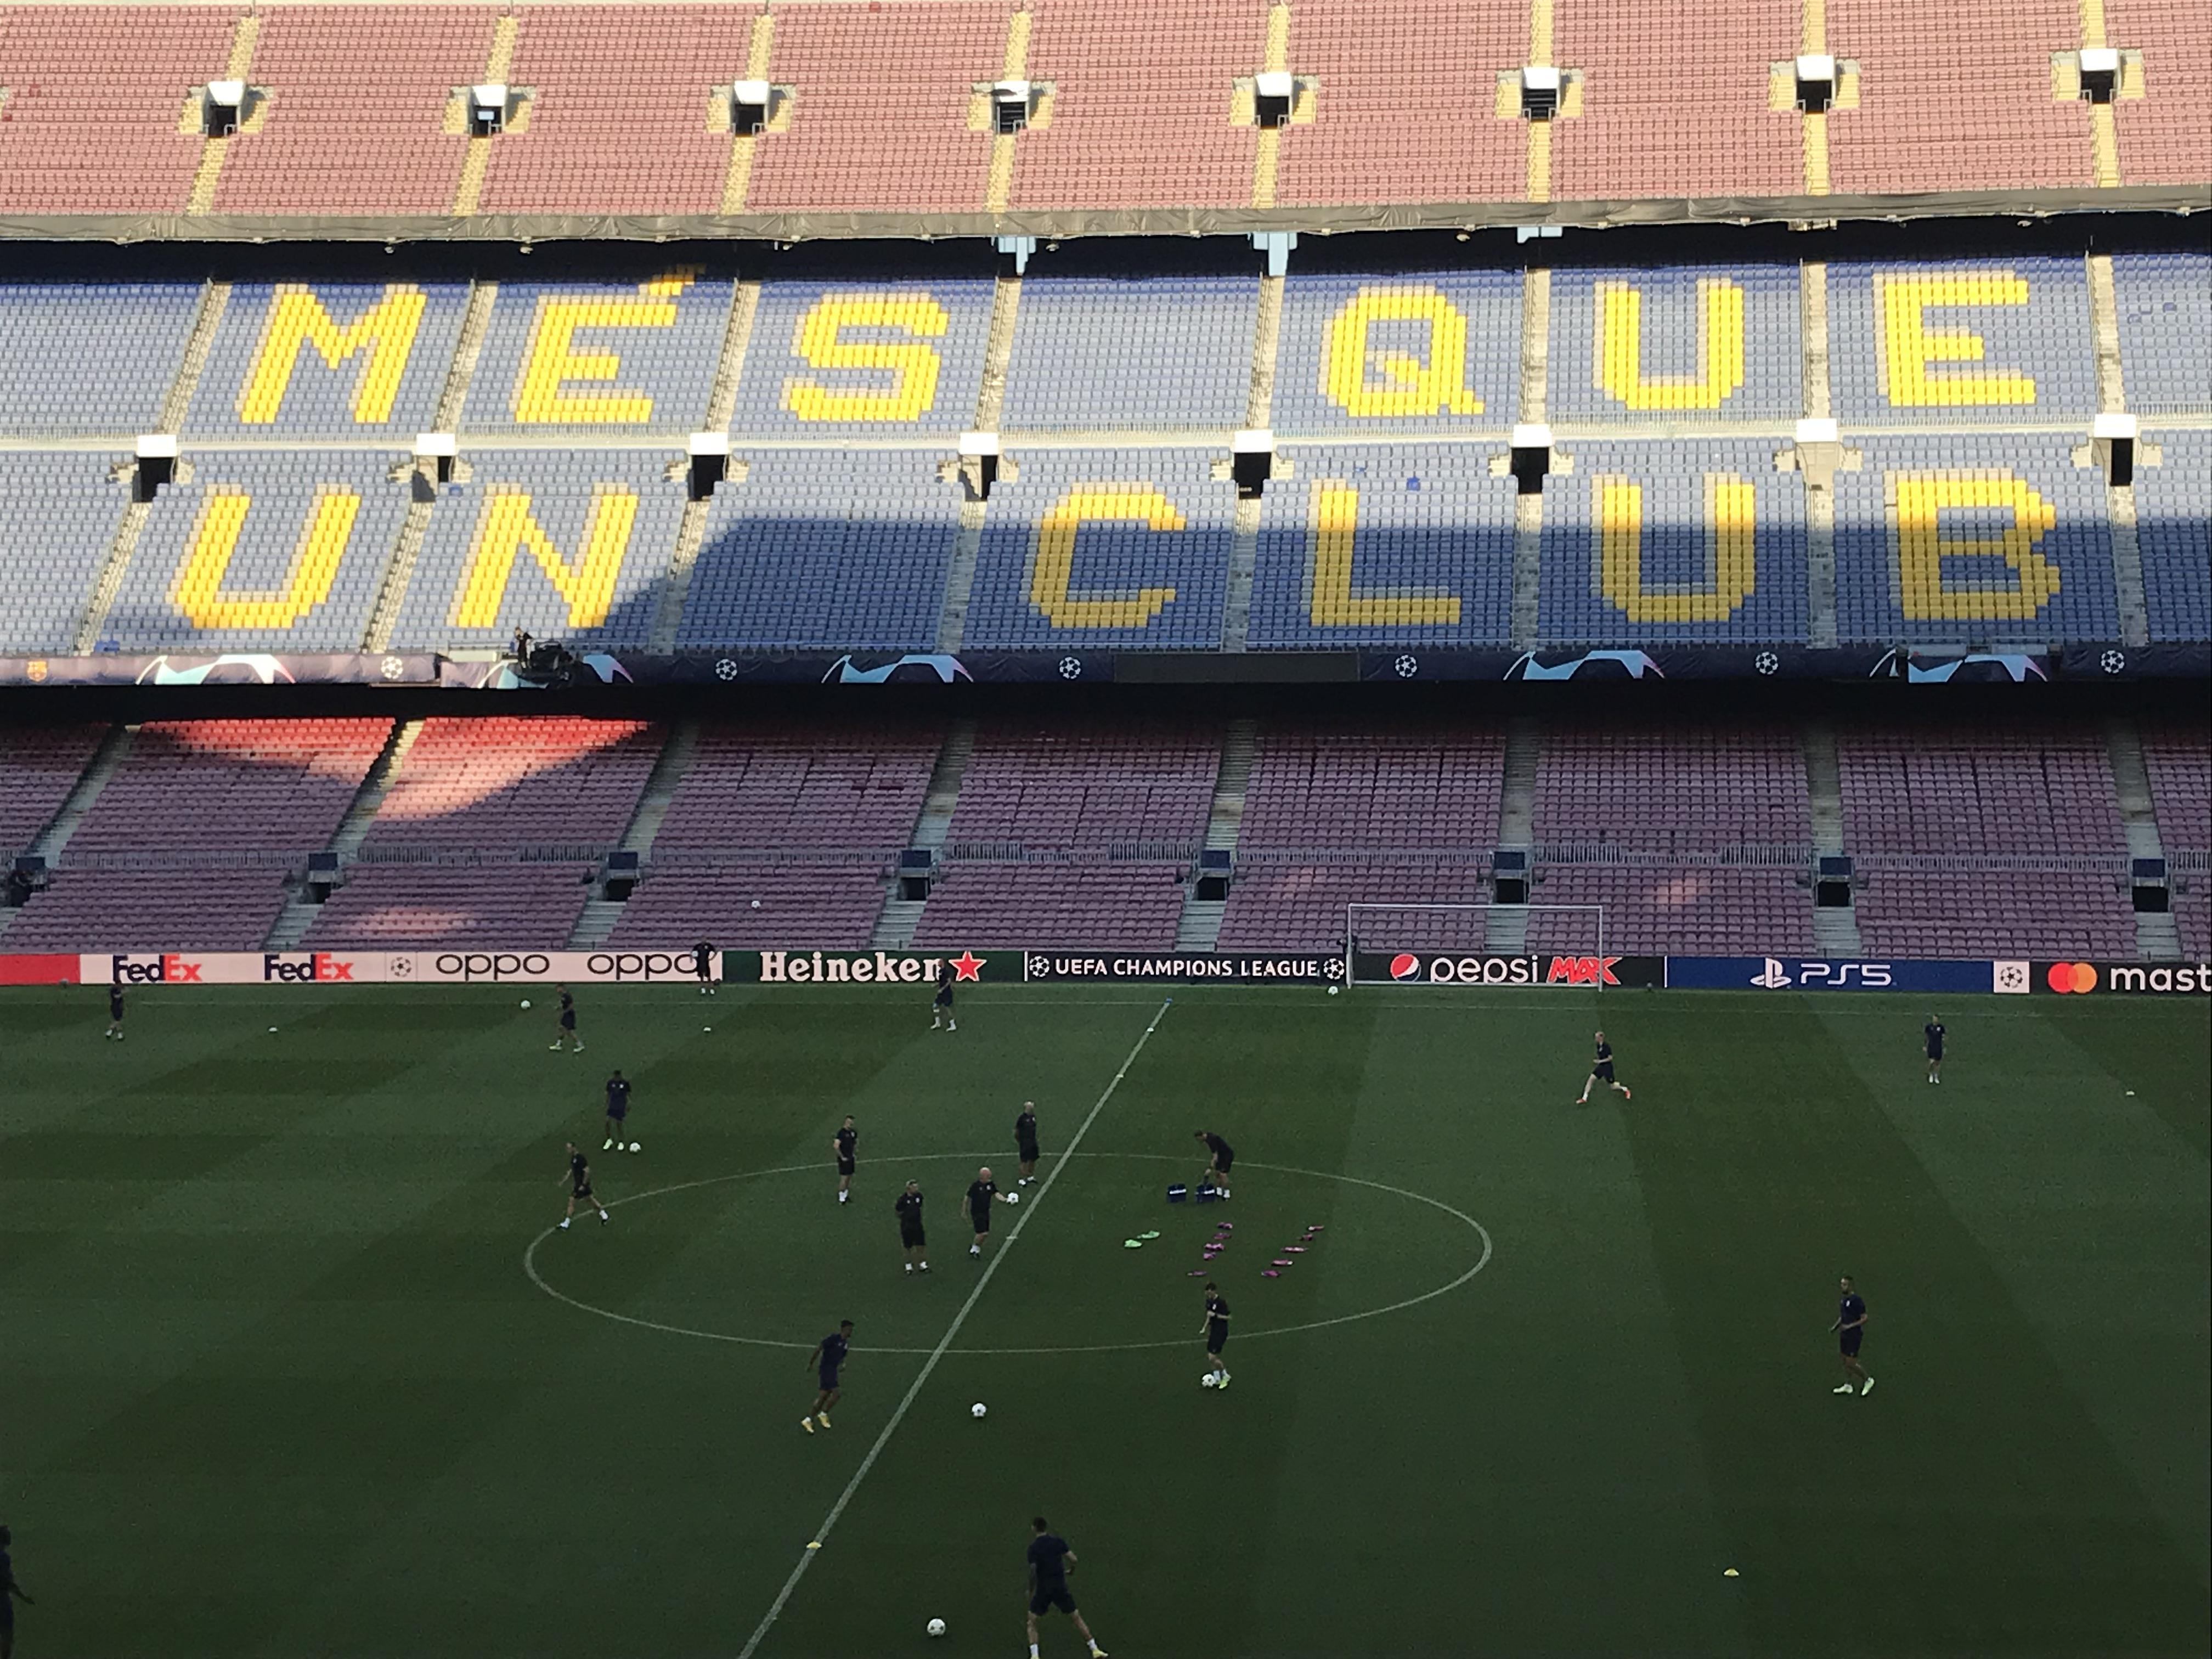 Barcelona - stadion Camp Nou